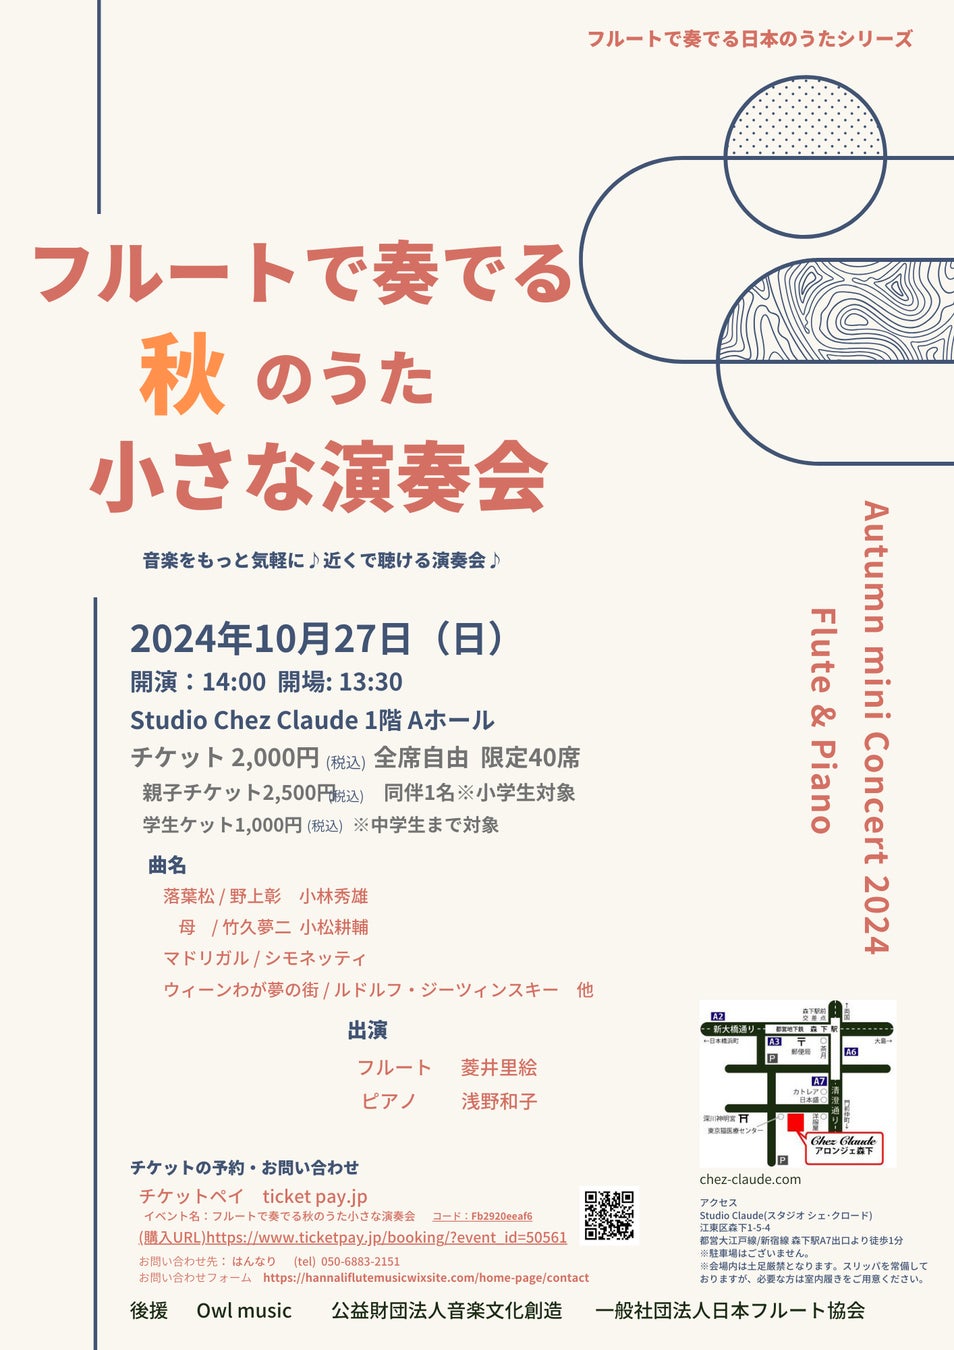 知ると、もっとおいしい。特別展「和食 ～日本の自然、人々の知恵～」を開催